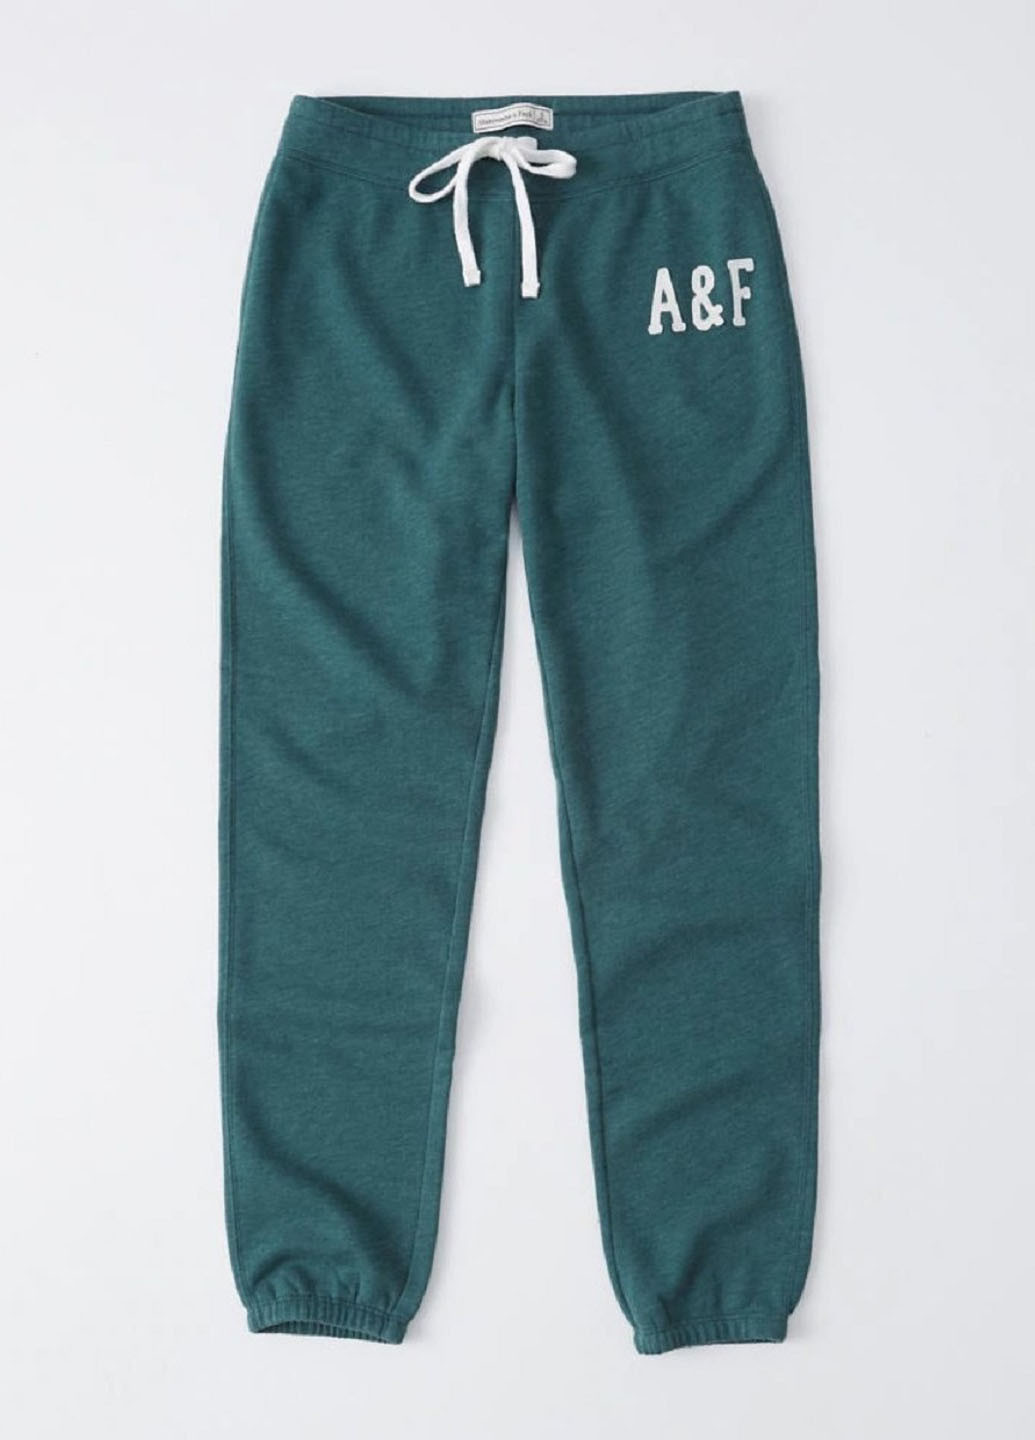 Зеленые спортивные демисезонные джоггеры брюки Abercrombie & Fitch